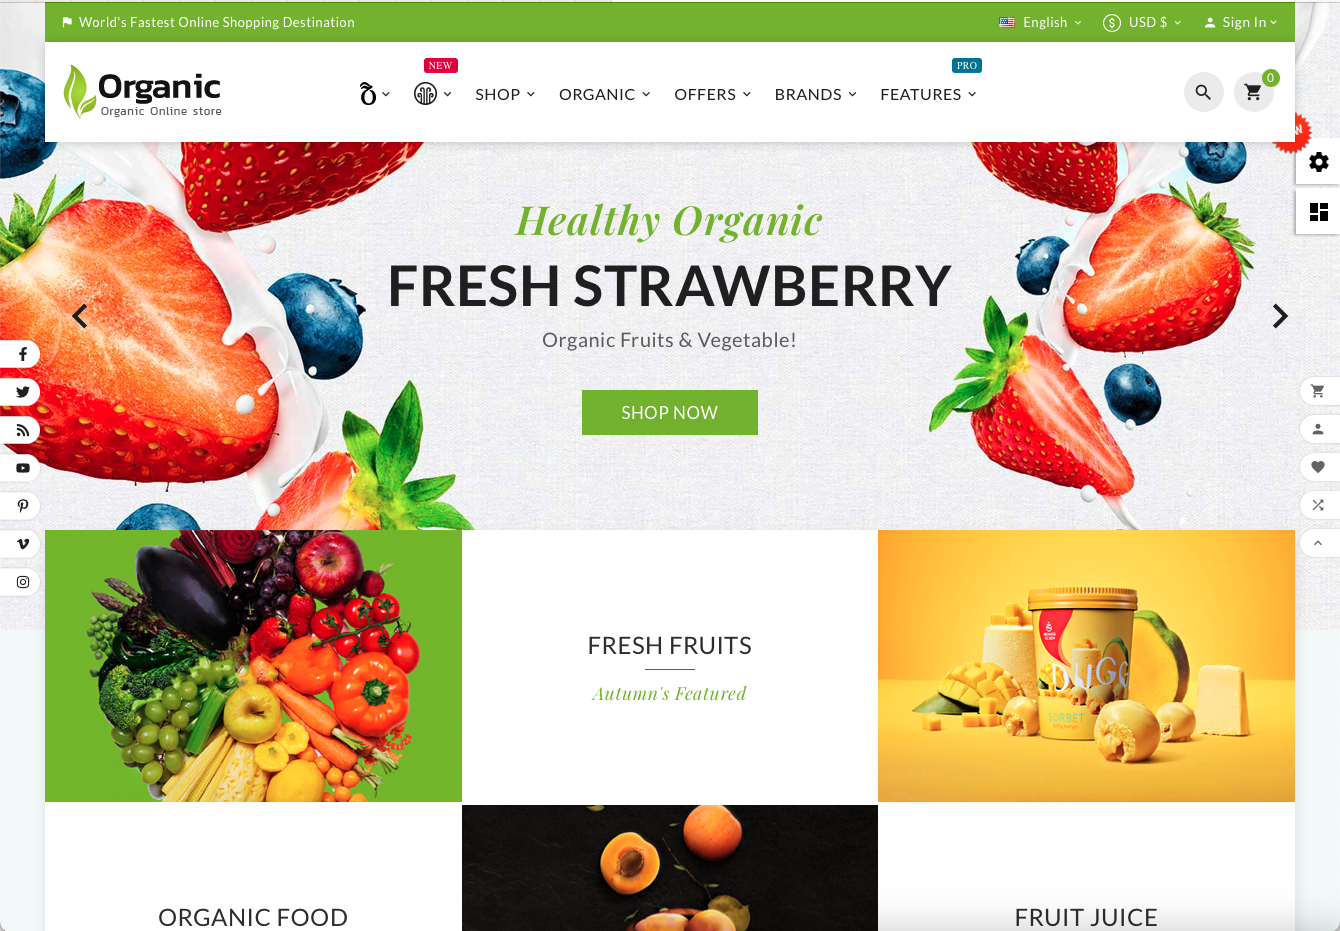 Organic Fresh - Obchod s potravinami - Šablona Market Store: Zdravá strava přímo do vašeho domova